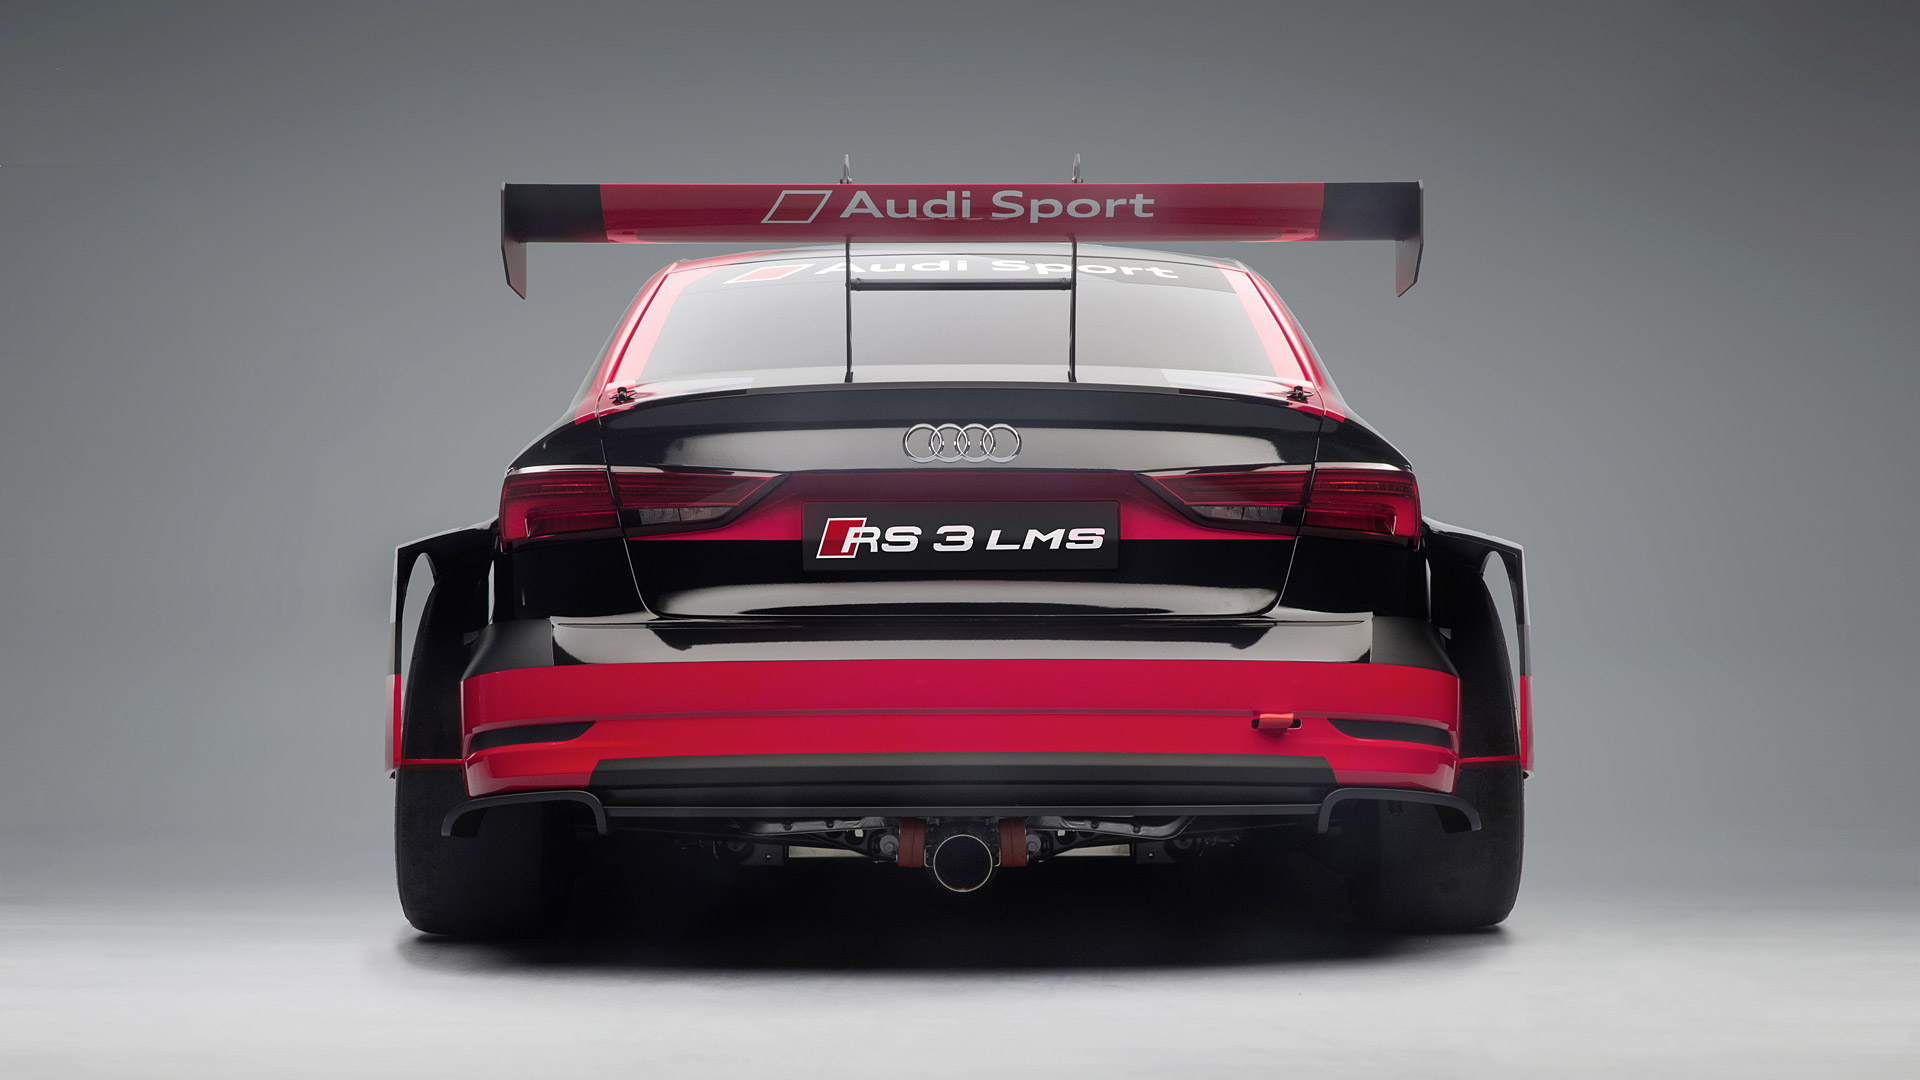  2017 Audi RS3 LMS Racecar Wallpaper.